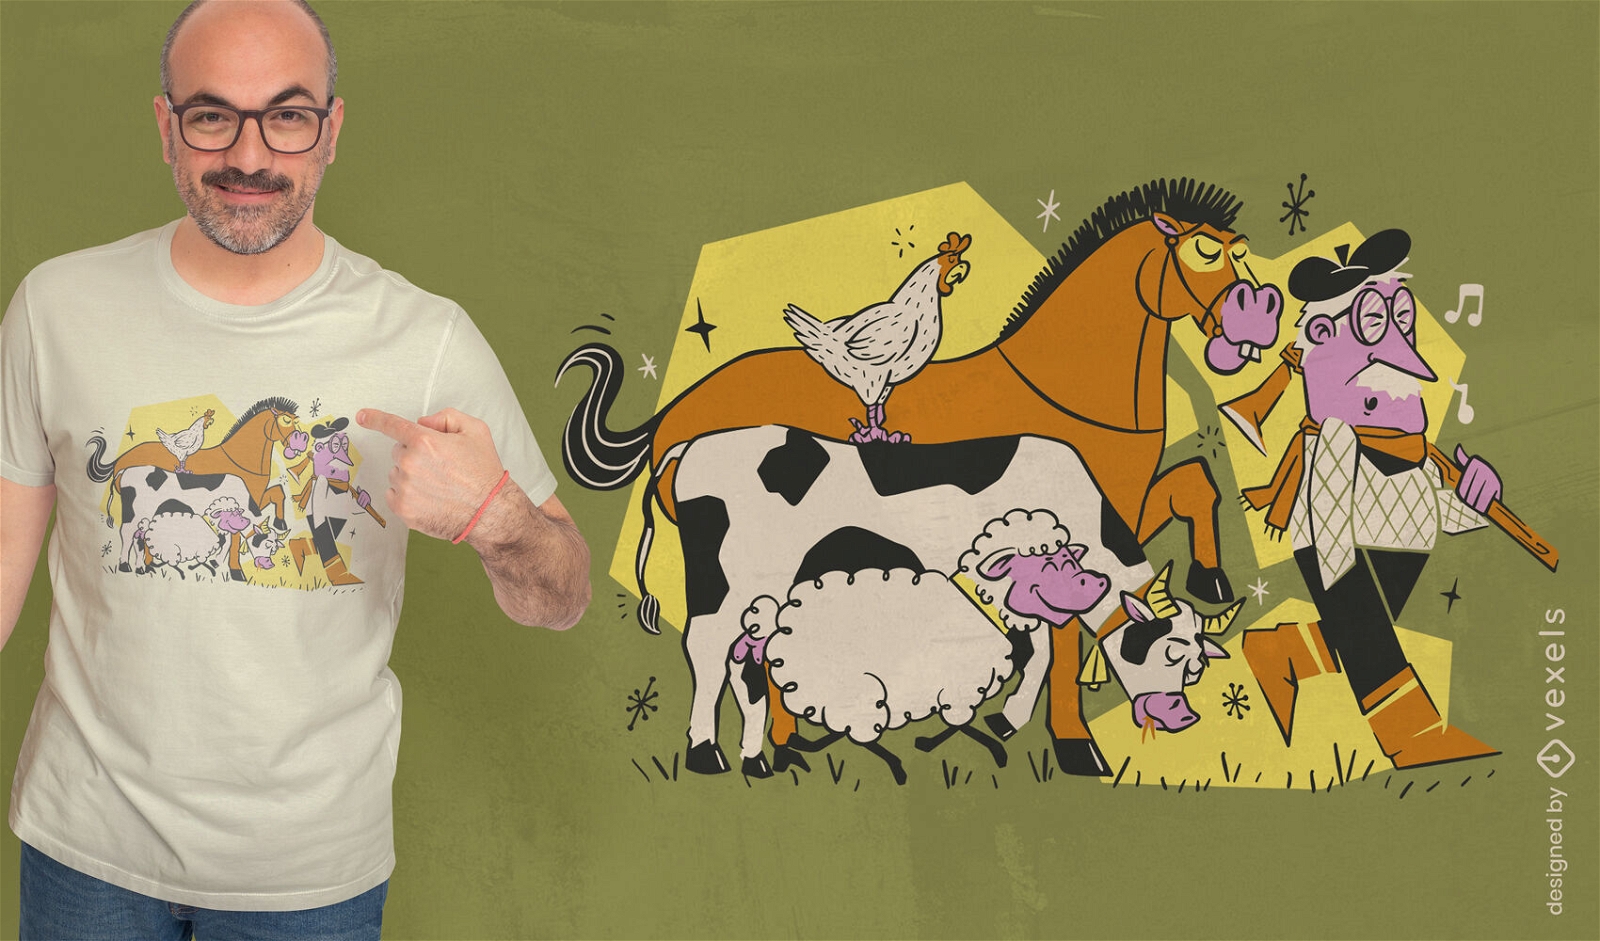 Dise?o de camiseta de dibujos animados de granjero y animales.